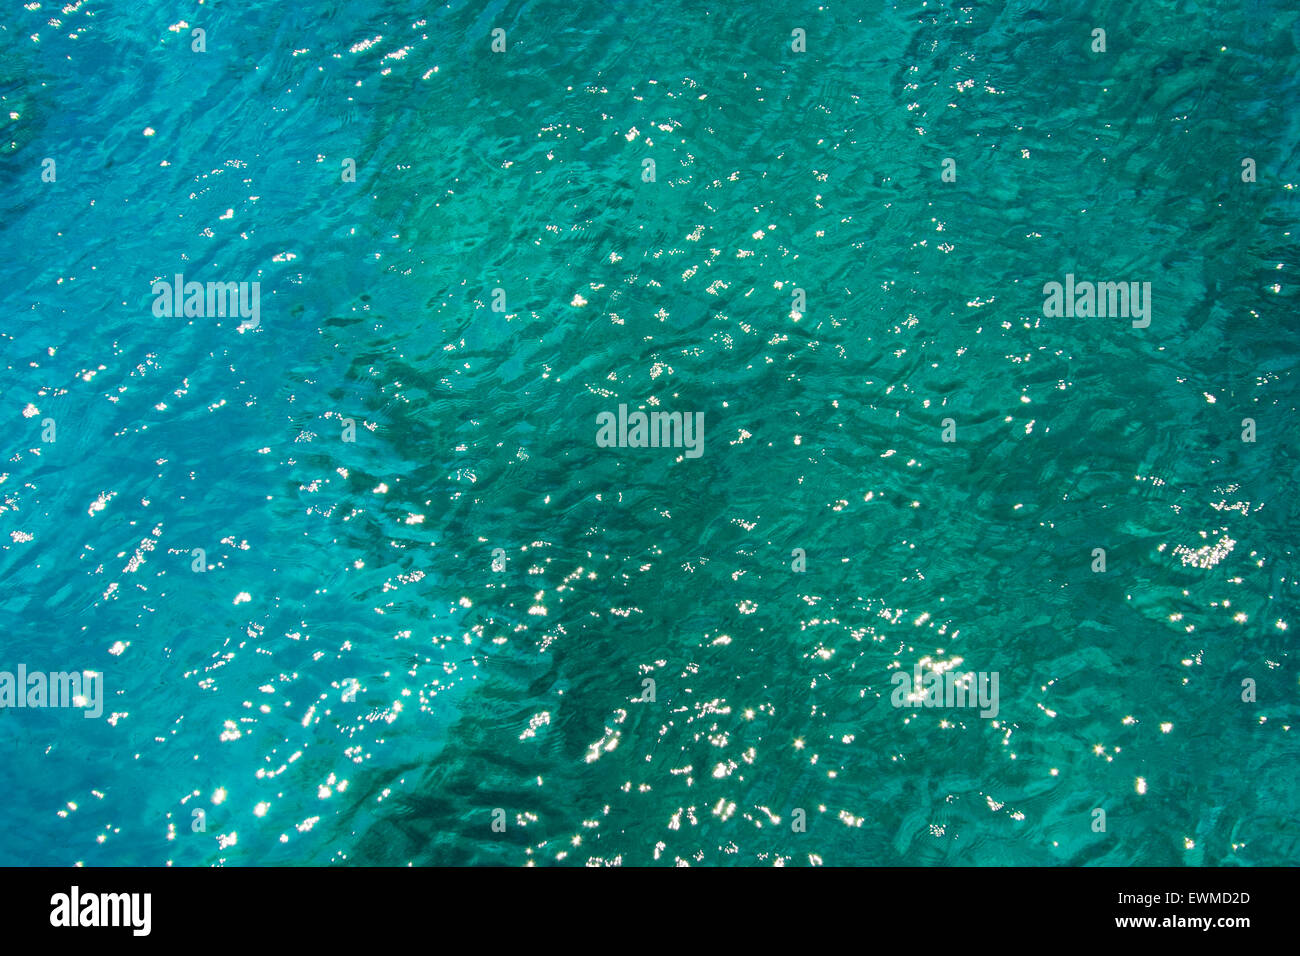 Dettaglio della laguna blu a Malta, che mostra la ricchezza di colori e la limpidezza dell'acqua, facendo per un impressionante consistenza. Foto Stock